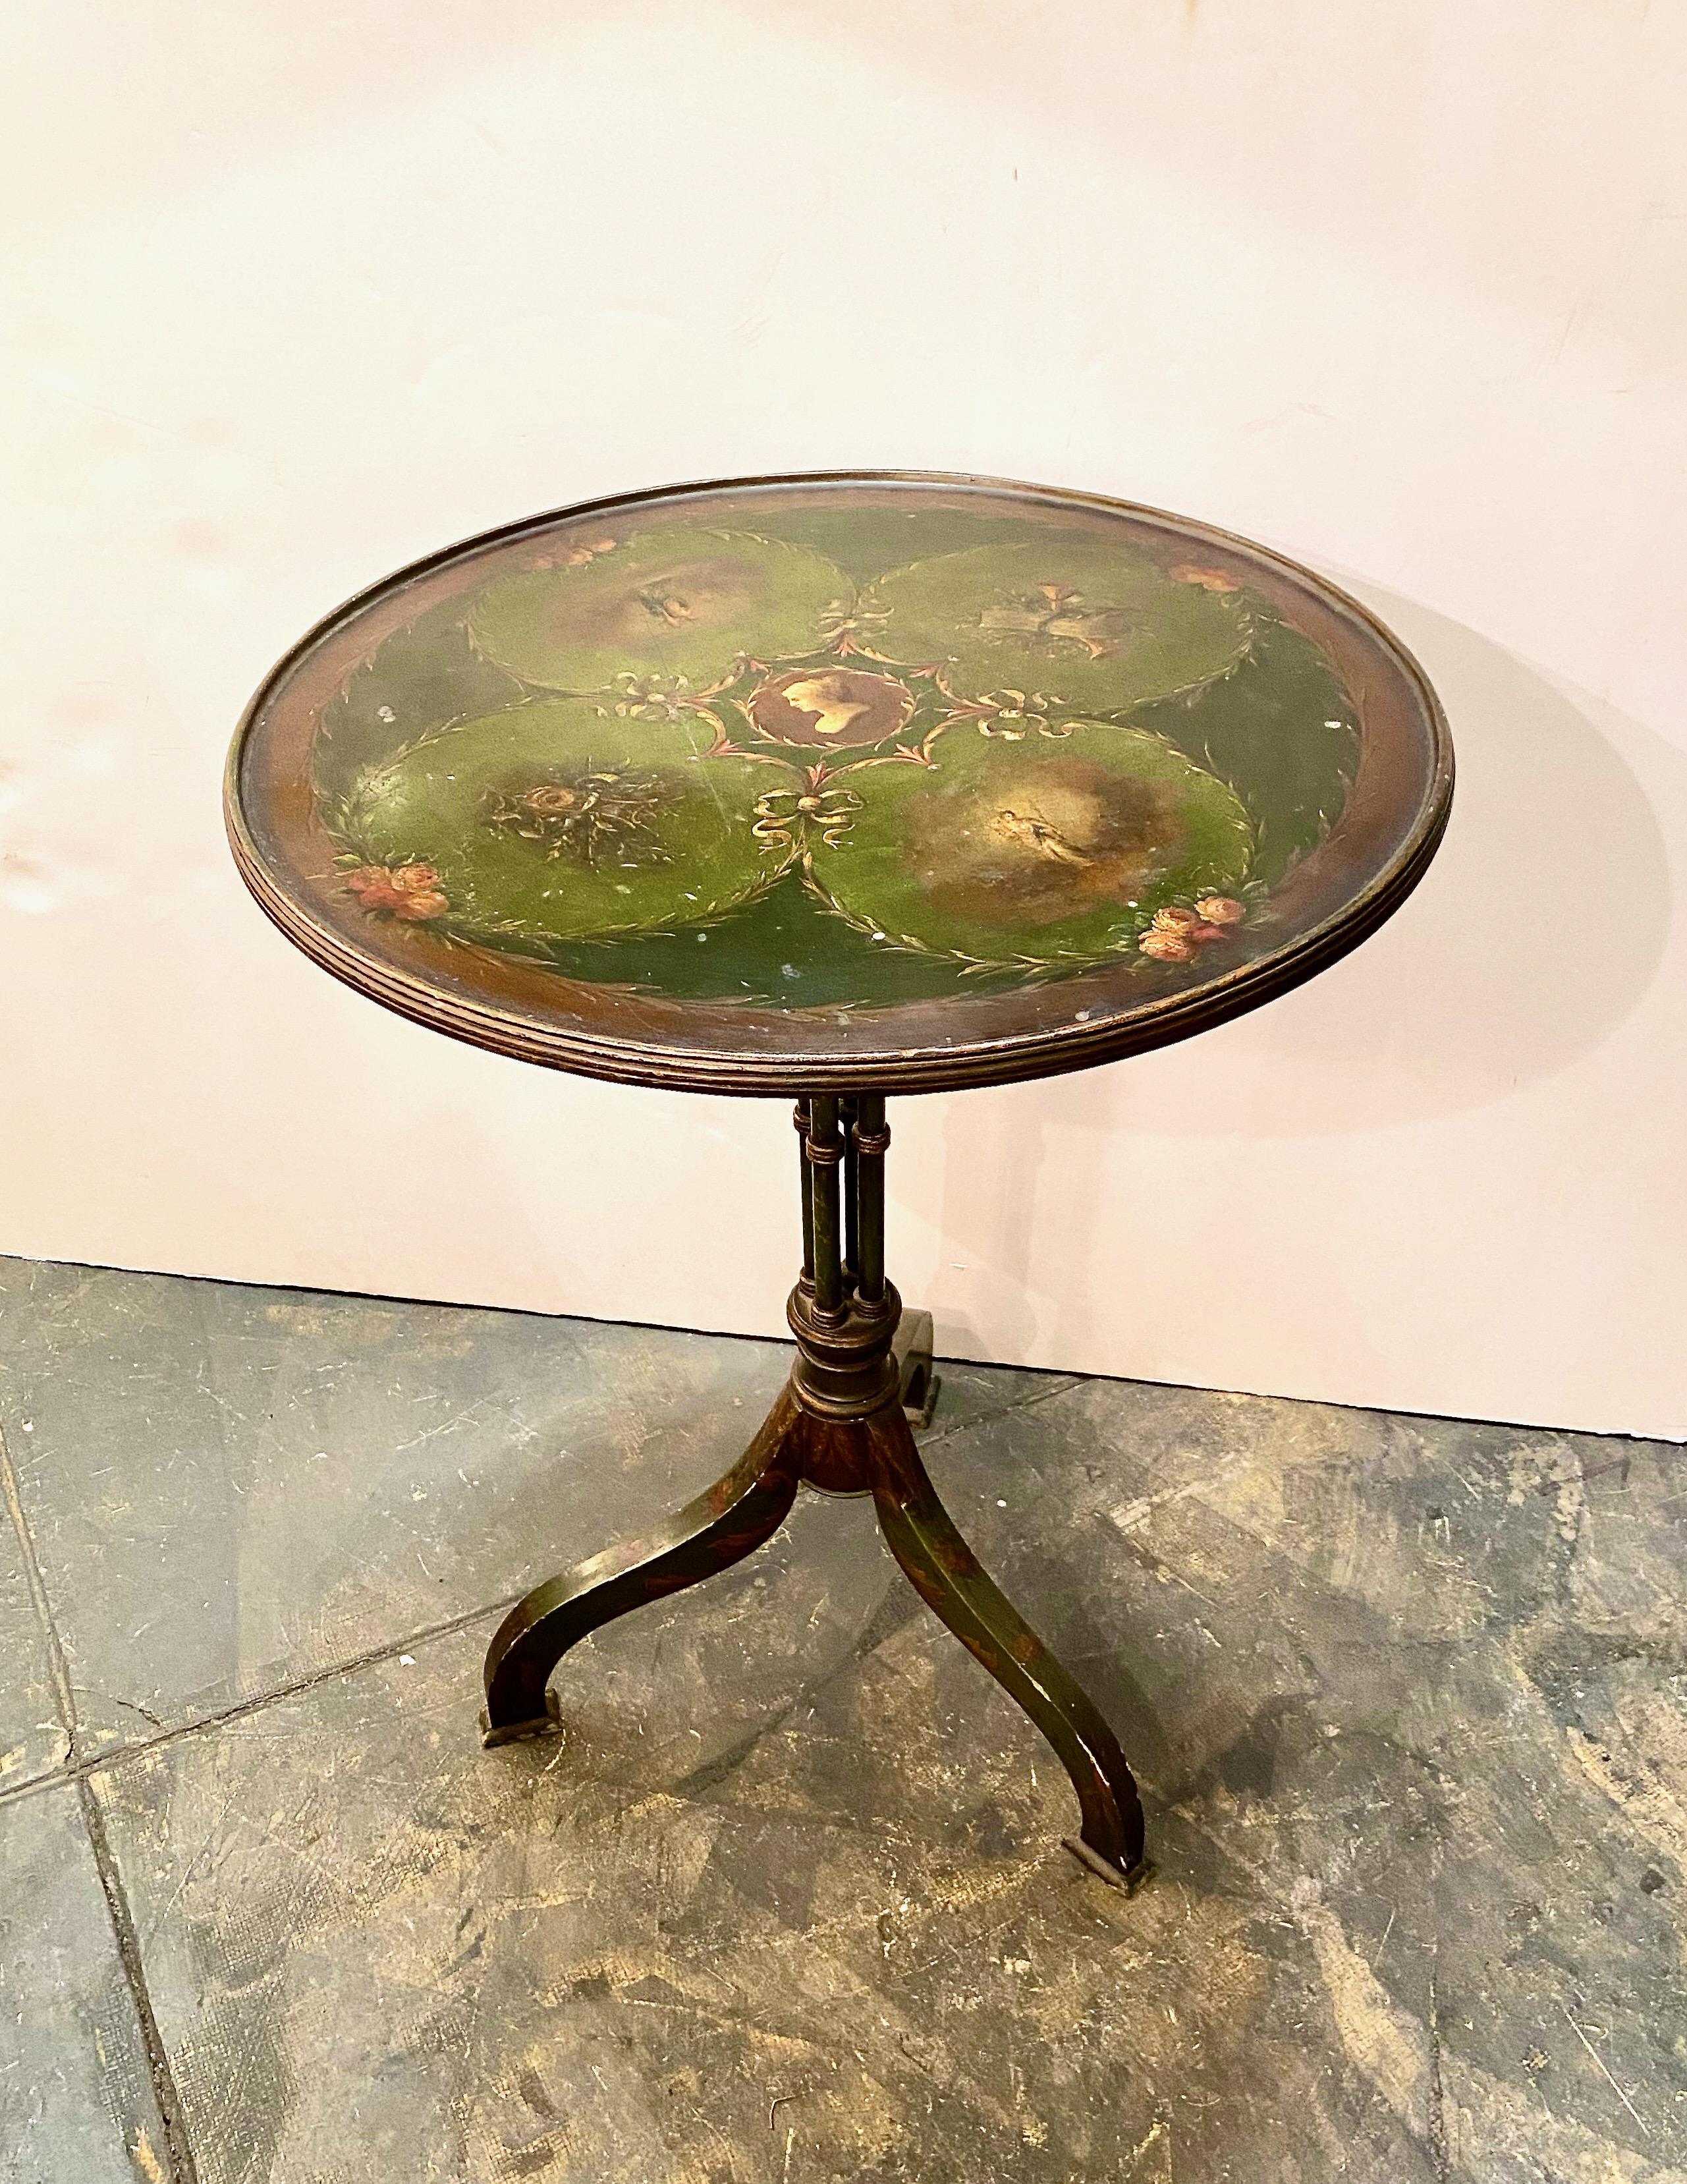 Dies ist ein charmanter kleiner Tisch mit kippbarer Platte aus dem frühen 19. Die Platte ist im Stil von Angelica Kauffman bemalt; der viersäulige Sockel ist mit floralen Details in einem tiefen italienischen Grün versehen. Die lackierte Oberfläche